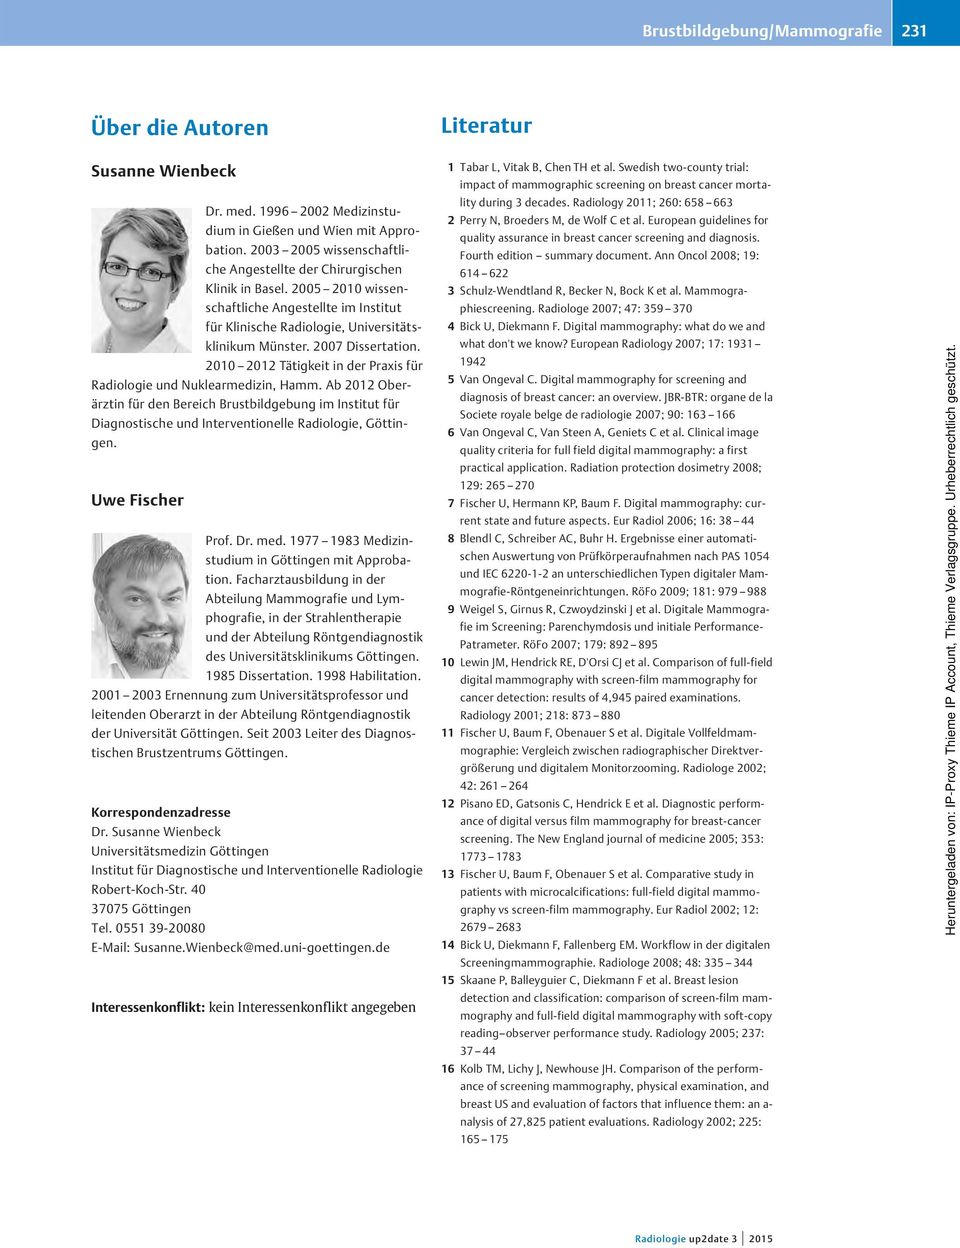 2007 Dissertation. 2010 2012 Tätigkeit in der Praxis für Radiologie und Nuklearmedizin, Hamm.